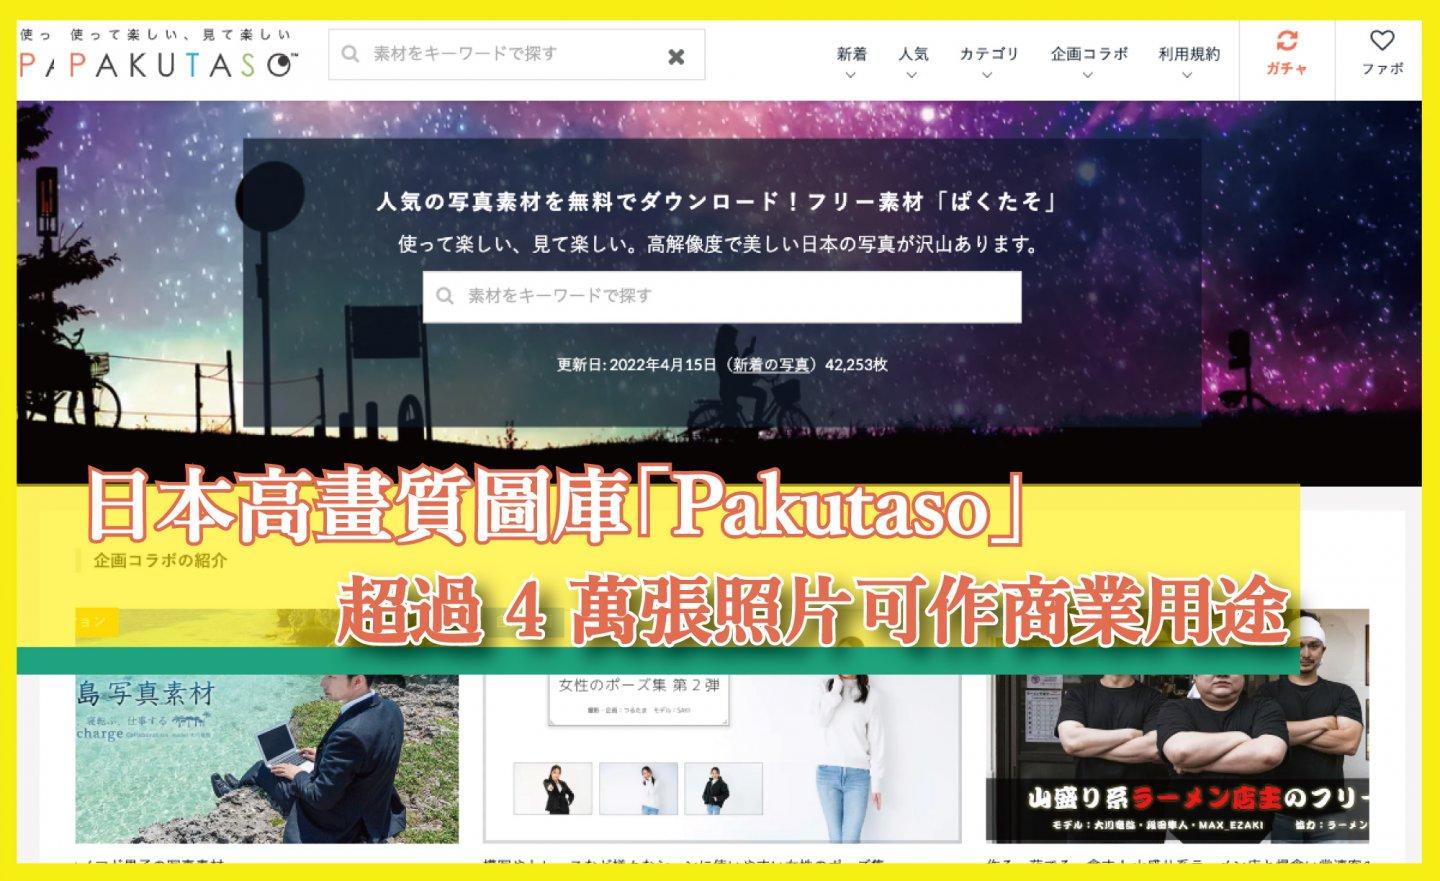 【免費】日本高畫質圖庫「Pakutaso」，超過 4 萬張照片可作商業用途